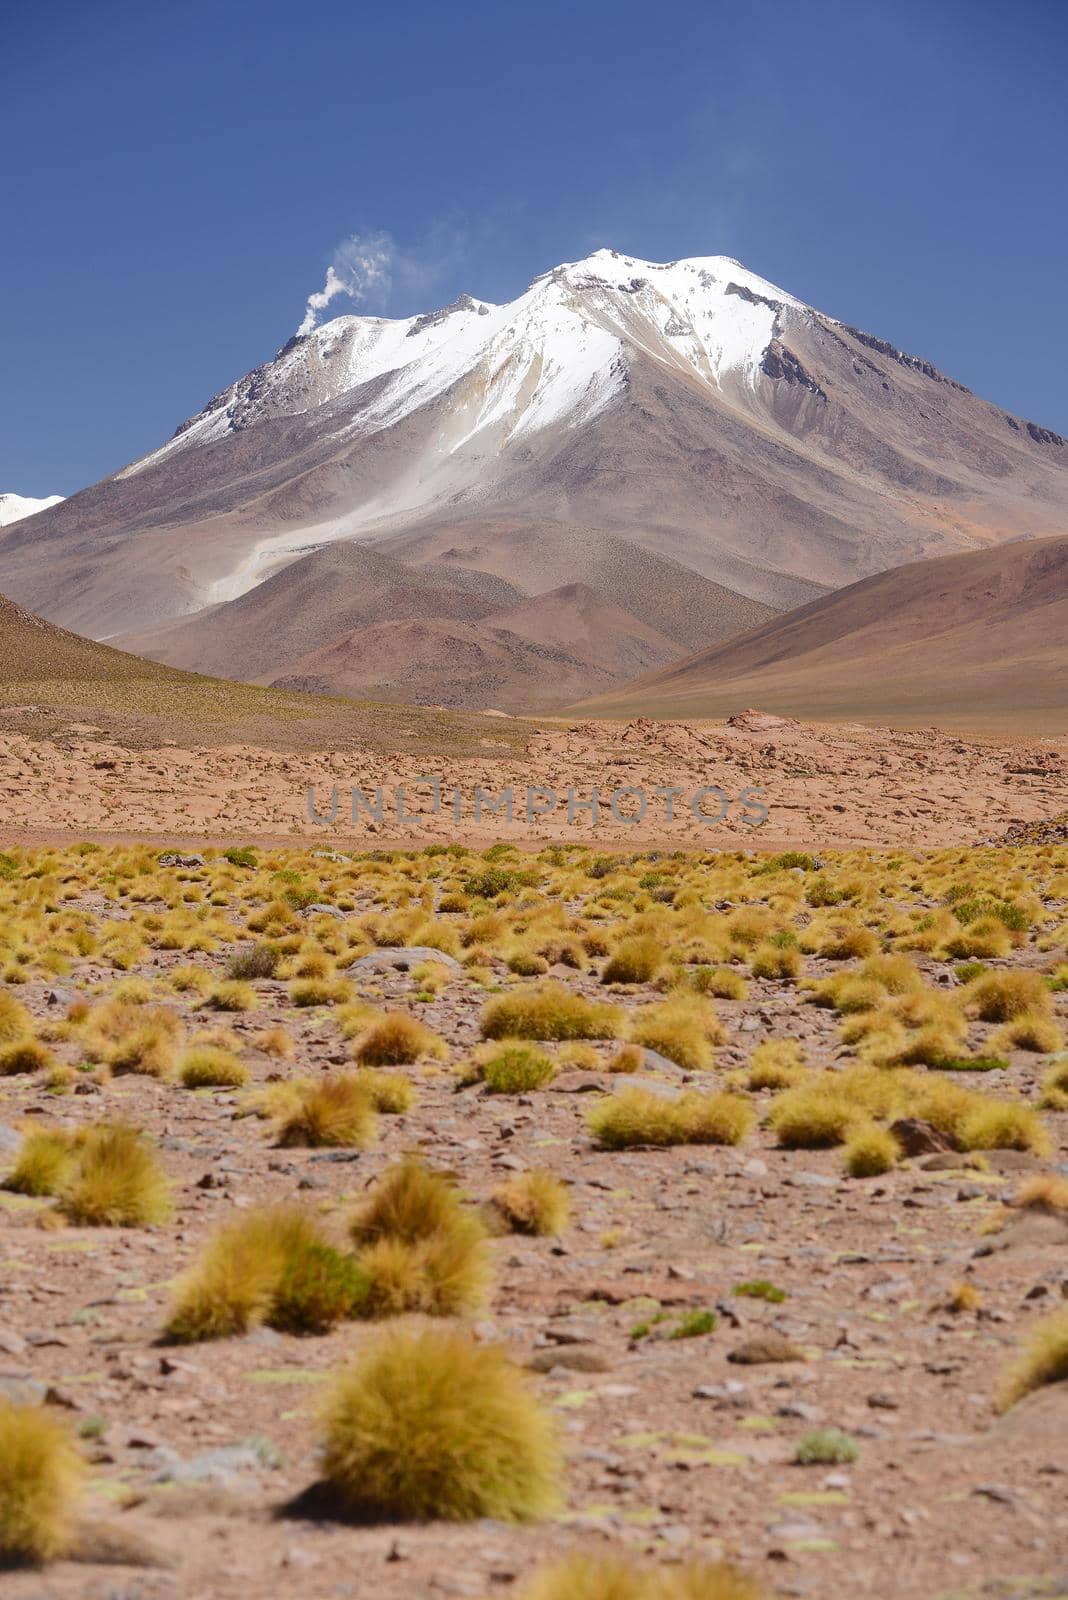 snow cap mountain in high altitude atacama desert in bolivia